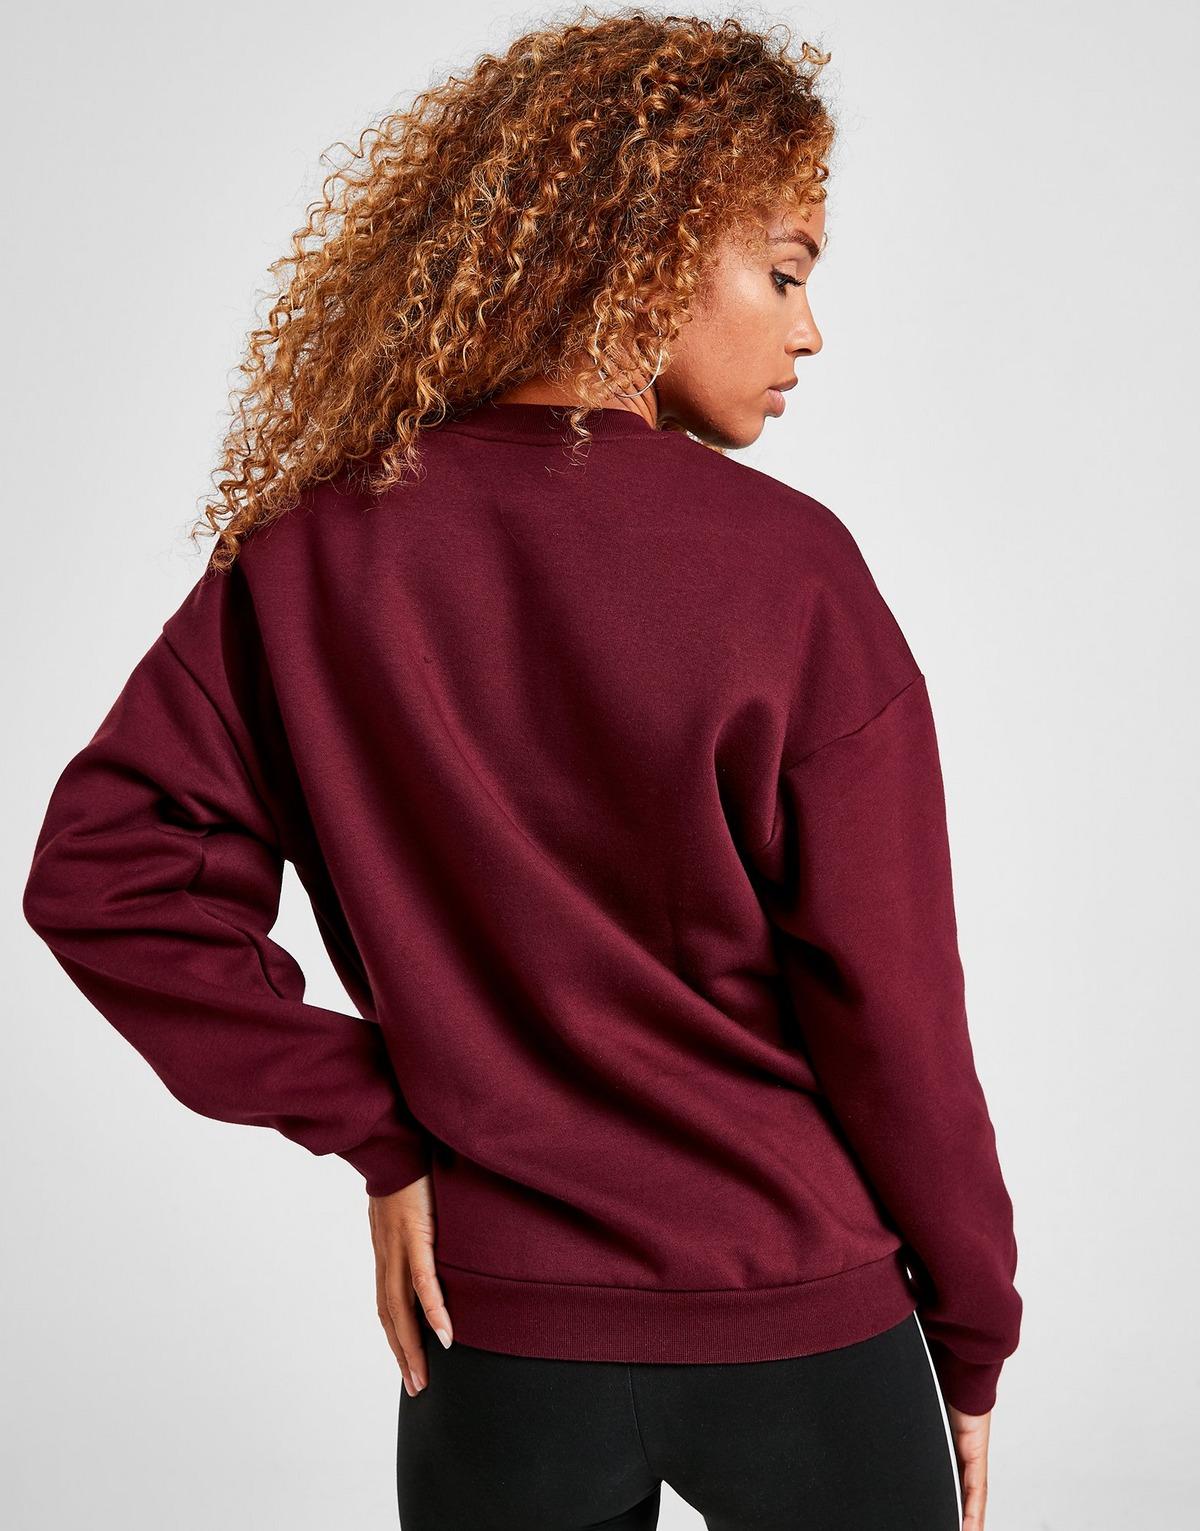 adidas Originals Linear Fleece Crew Sweatshirt in Maroon (Red) - Lyst